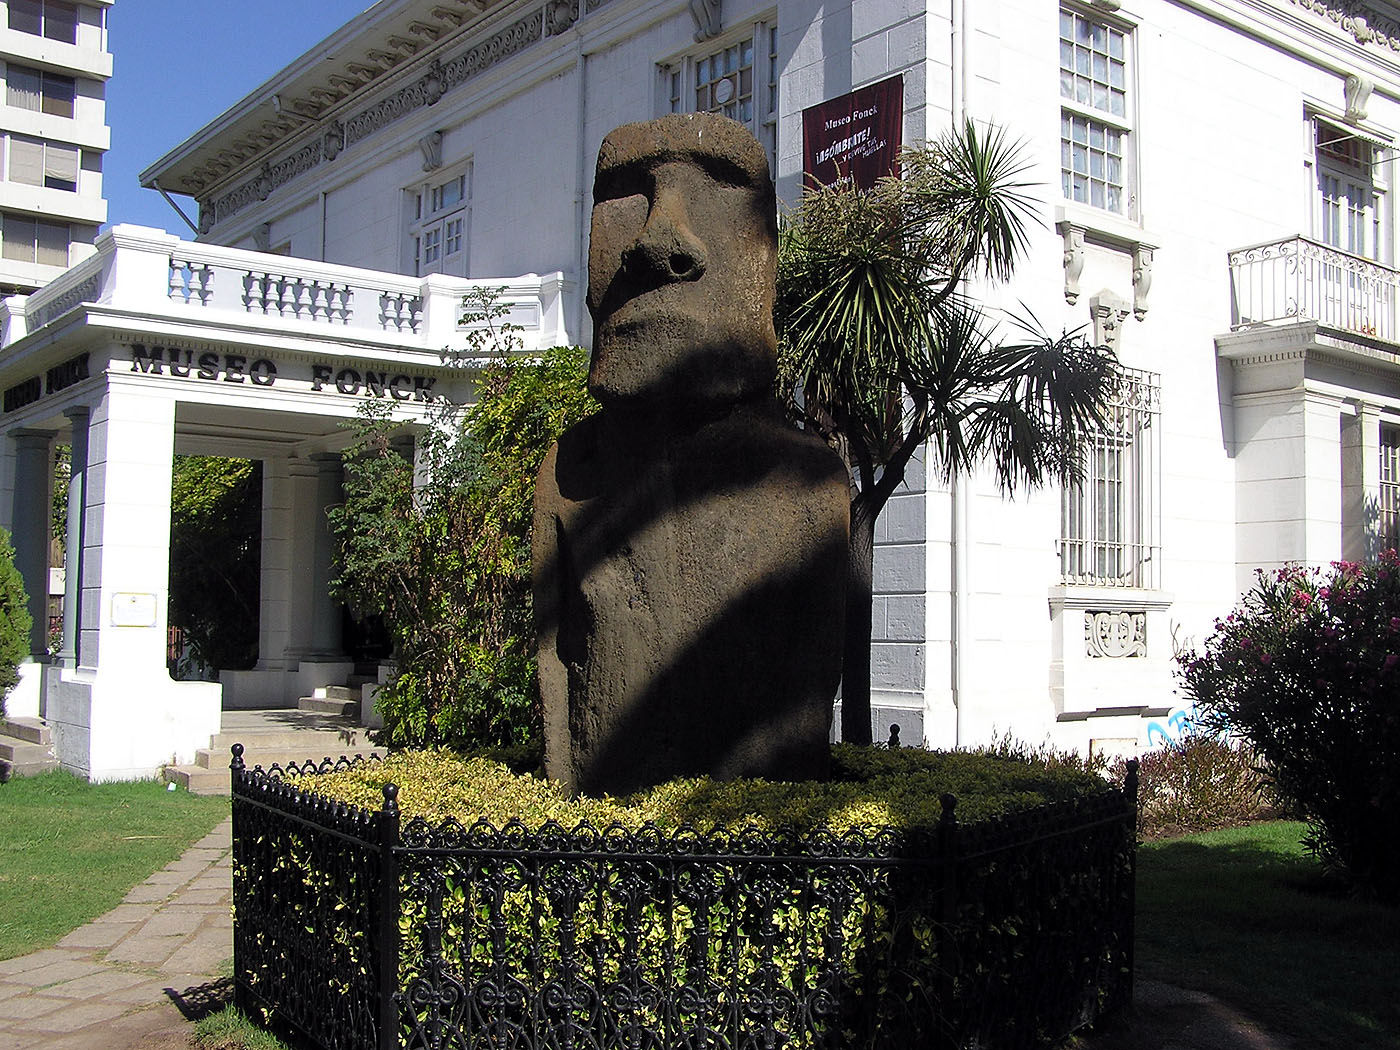 Easter Island moia, Museo de Arqueologico e Historia Francisco Fonch, Vina del Mar, Chile